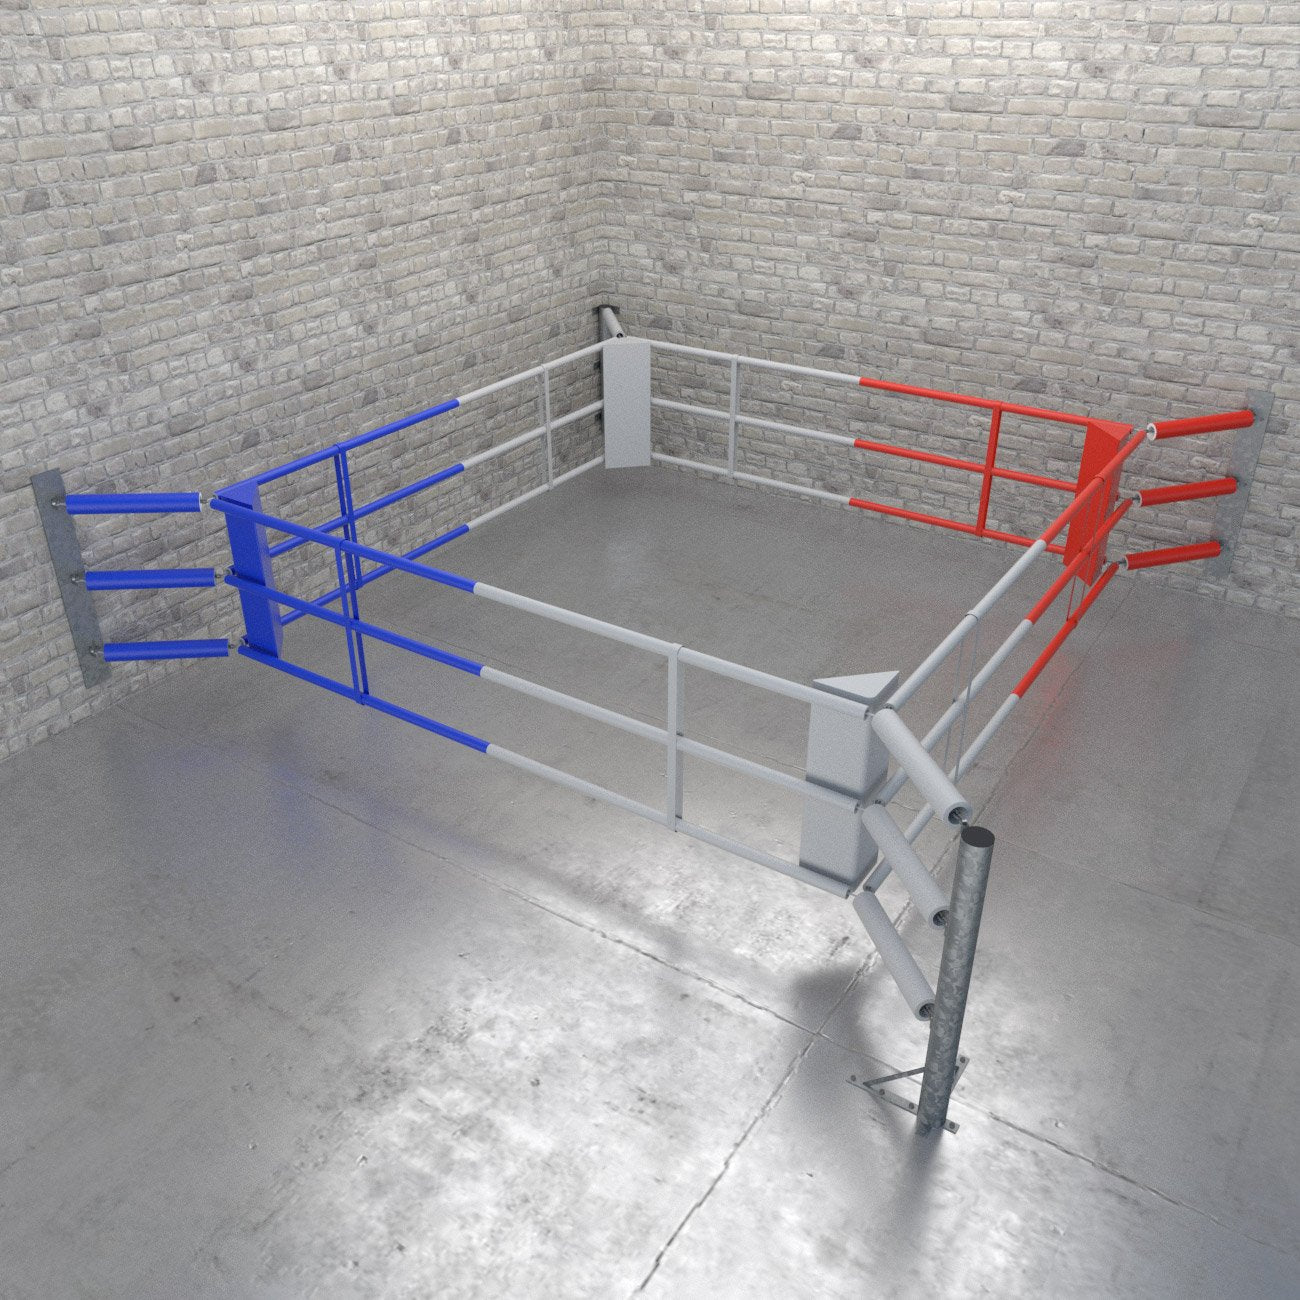 Bodenboxring Fighter Wall mit 3 Seilen